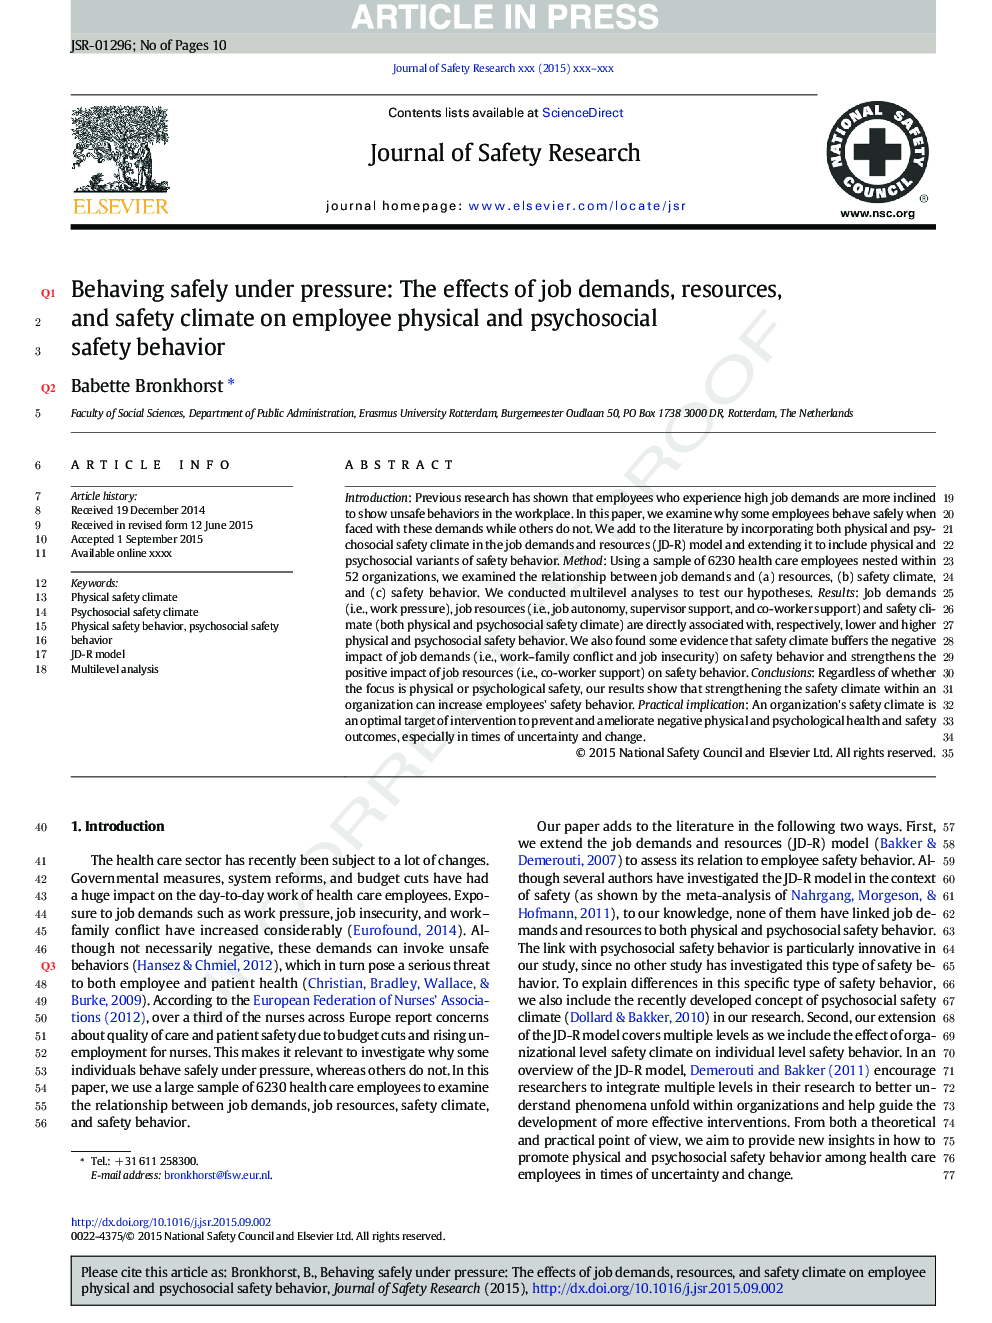 رفتار با خیال راحت تحت فشار: اثرات خواسته های شغلی، منابع و محیط زیست ایمنی بر رفتار کارکنان جسمی و روانی اجتماعی 